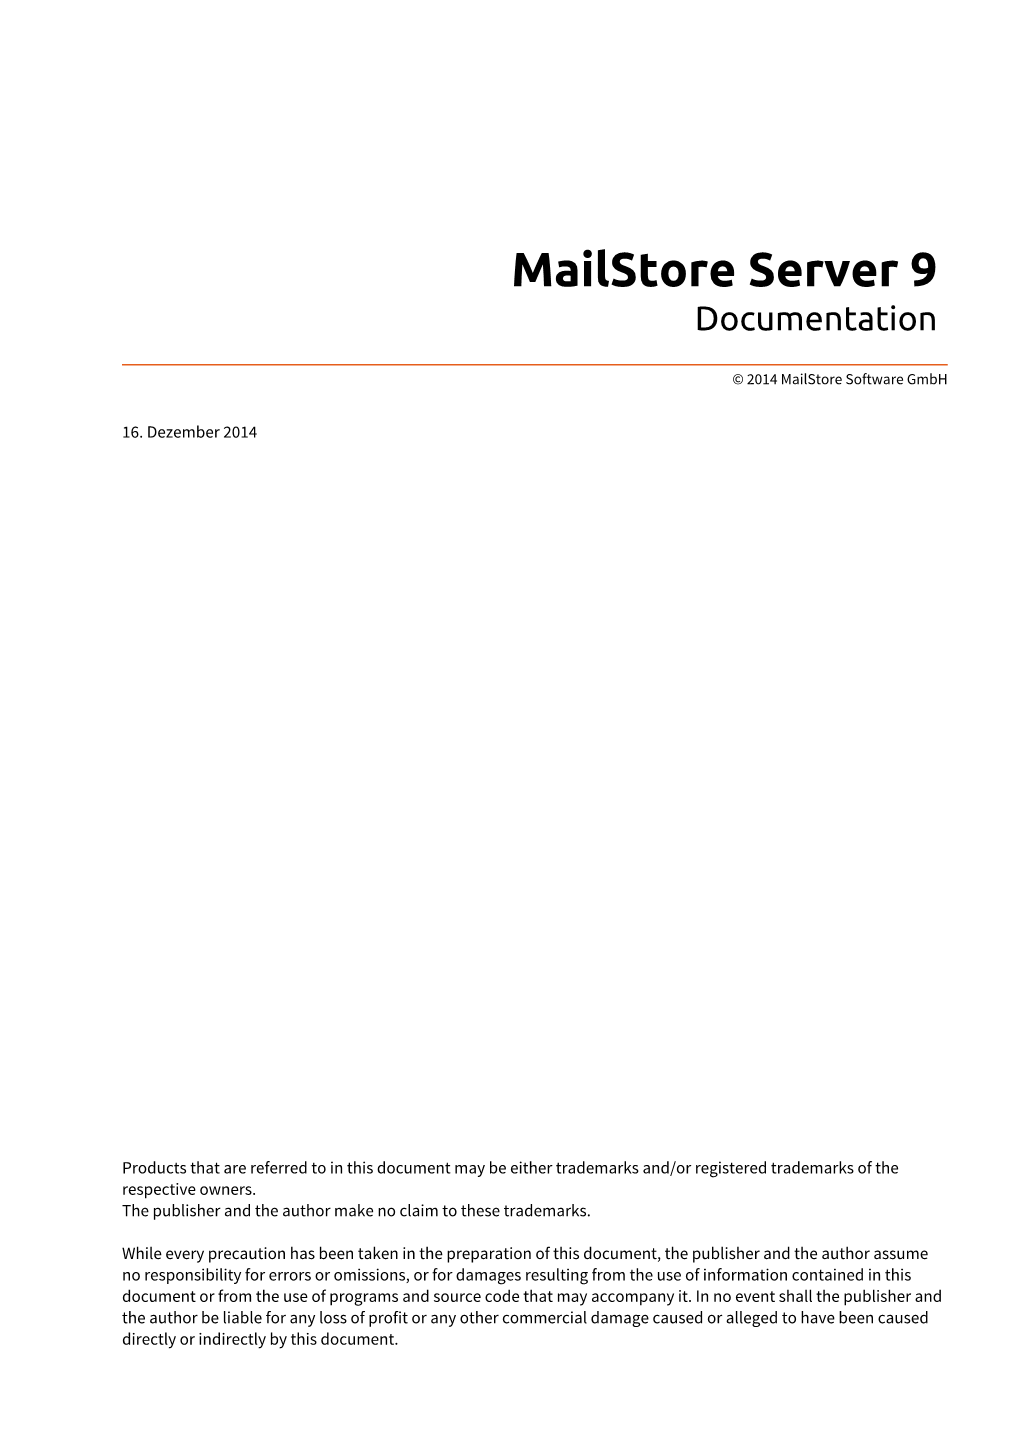 Mailstore Server 9 Documentation